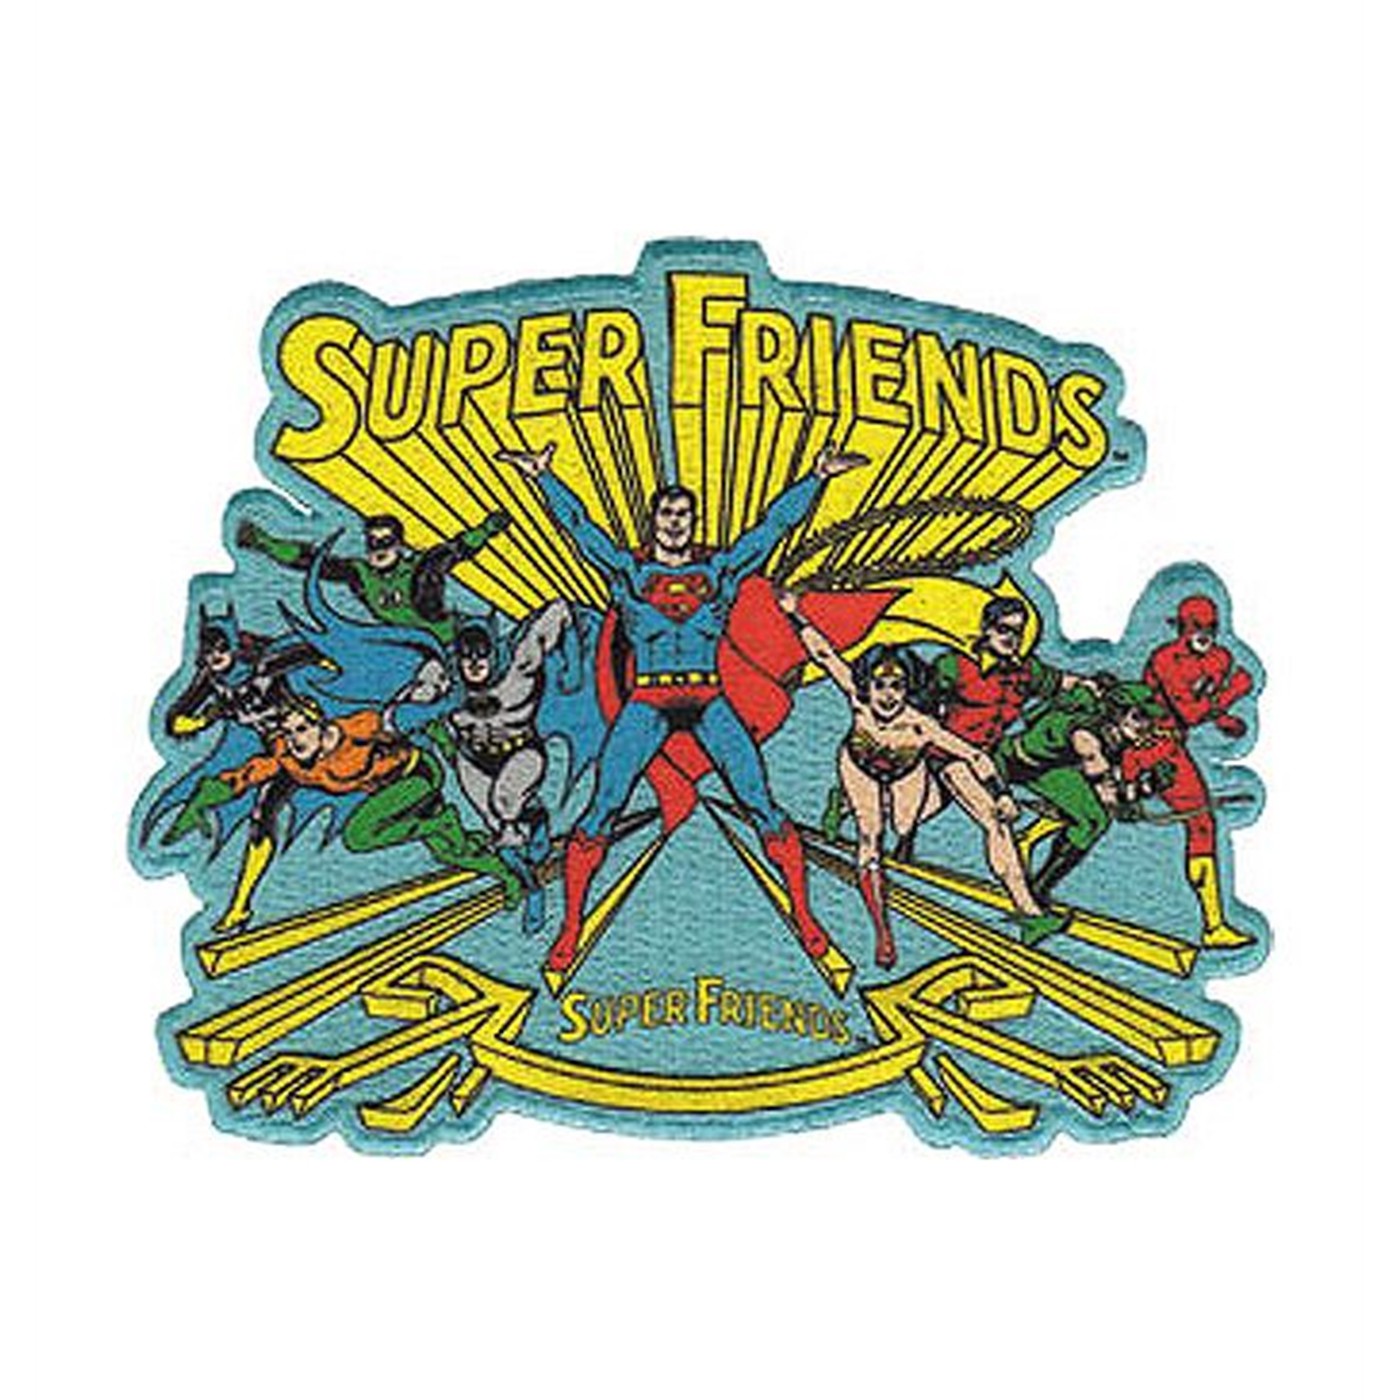 Super Friends Patch